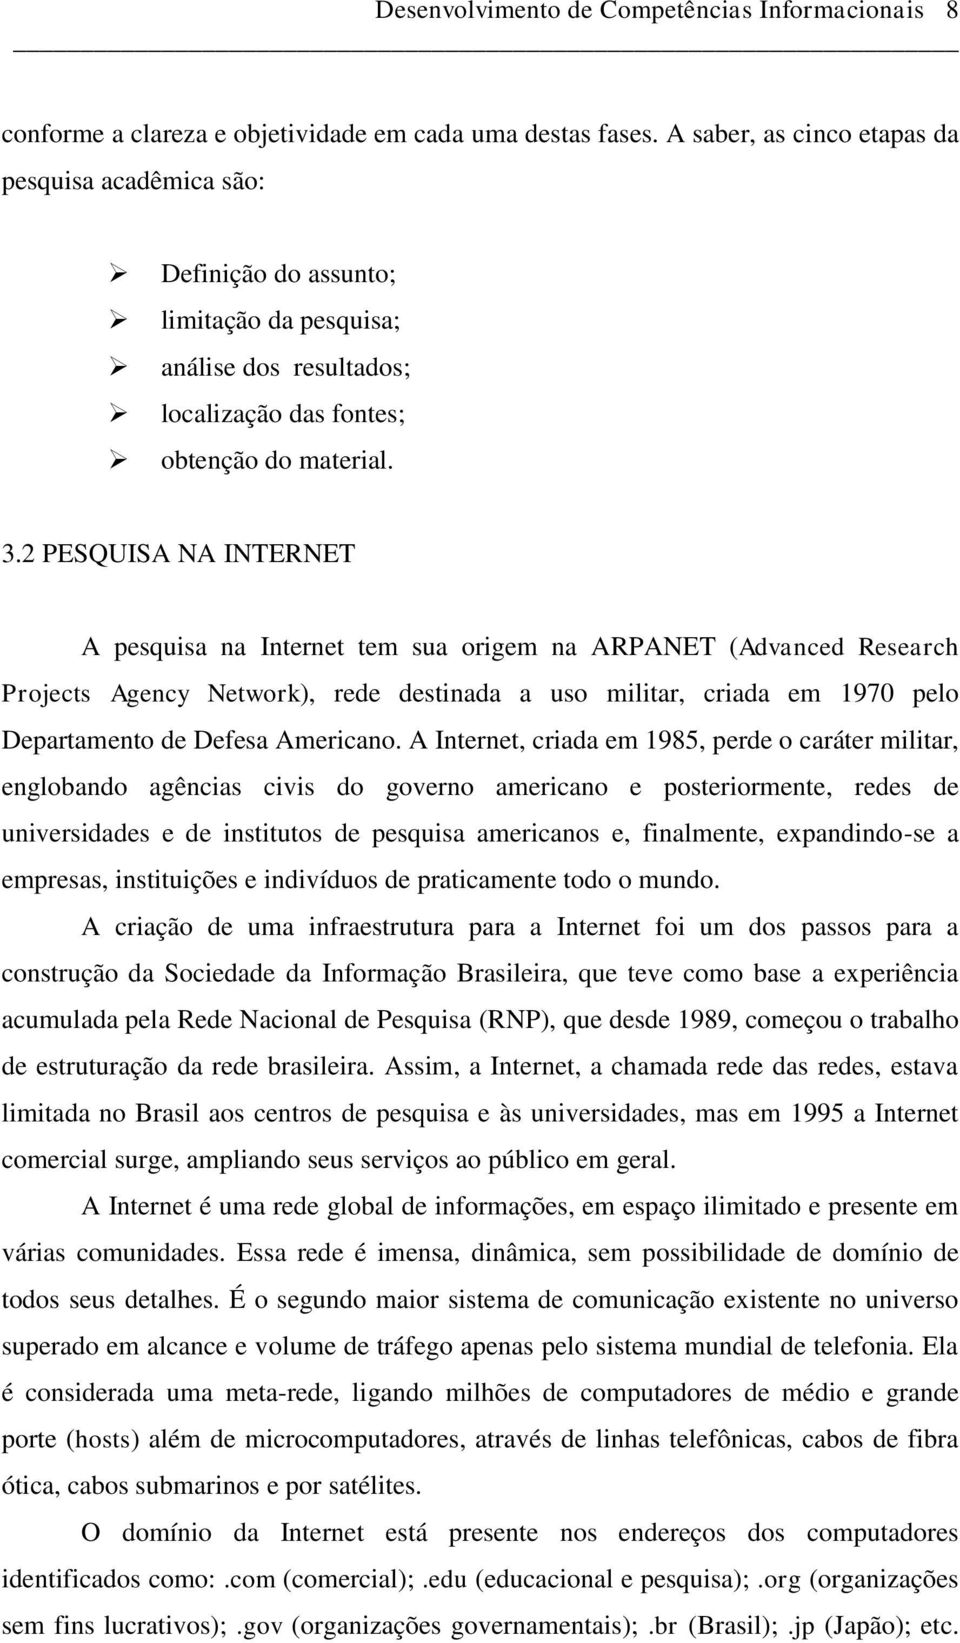 2 PESQUISA NA INTERNET A pesquisa na Internet tem sua origem na ARPANET (Advanced Research Projects Agency Network), rede destinada a uso militar, criada em 1970 pelo Departamento de Defesa Americano.